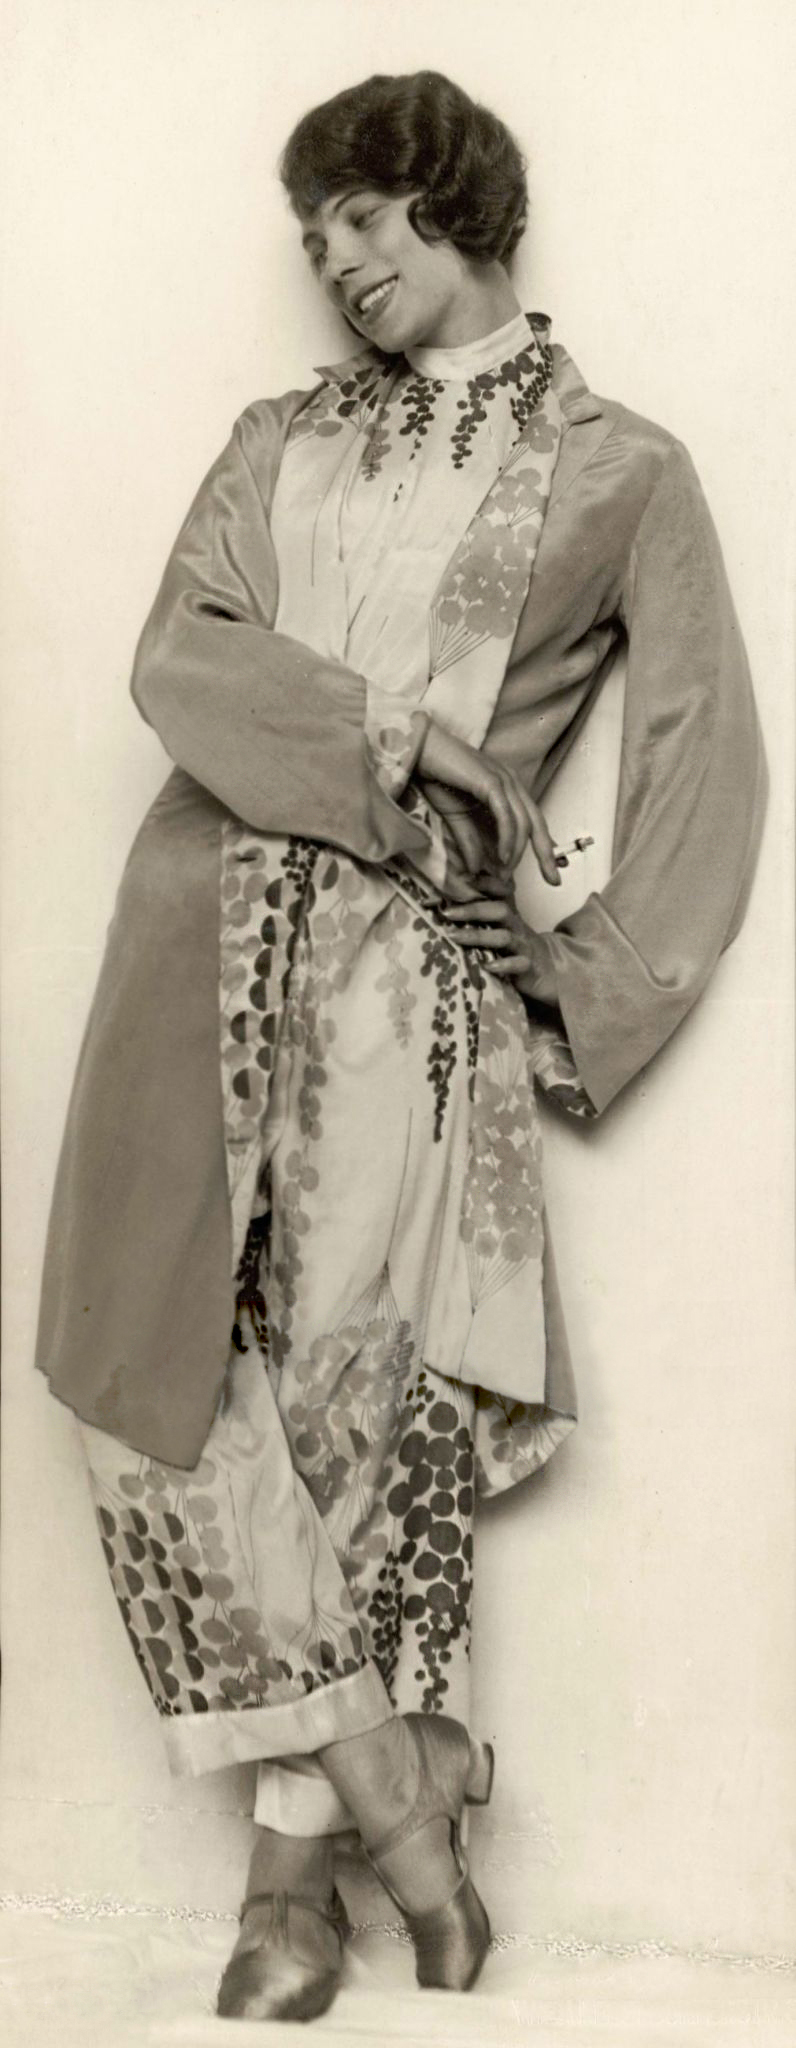 Trude Fleischmann :: Austrian dancer Tilly Losch photographed around 1930 [Die Tänzerin Tilly Losch, um 1925 (sic)] | src Getty Images